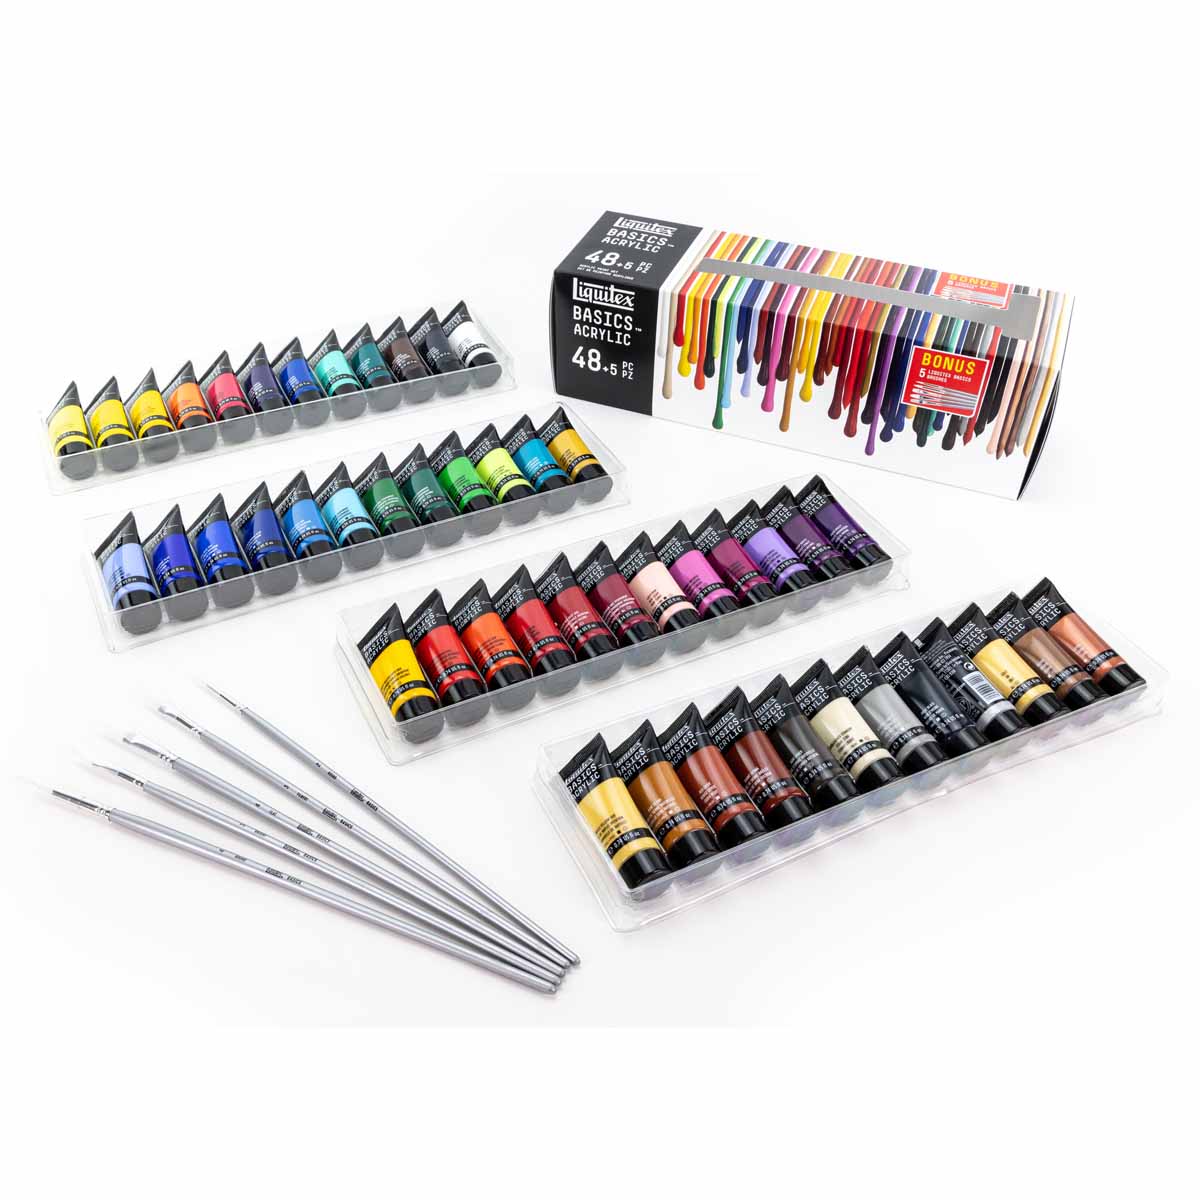 Liquitex BASICS Acrylic Set of 48 (22ml) + 5 Long Handle Brushes